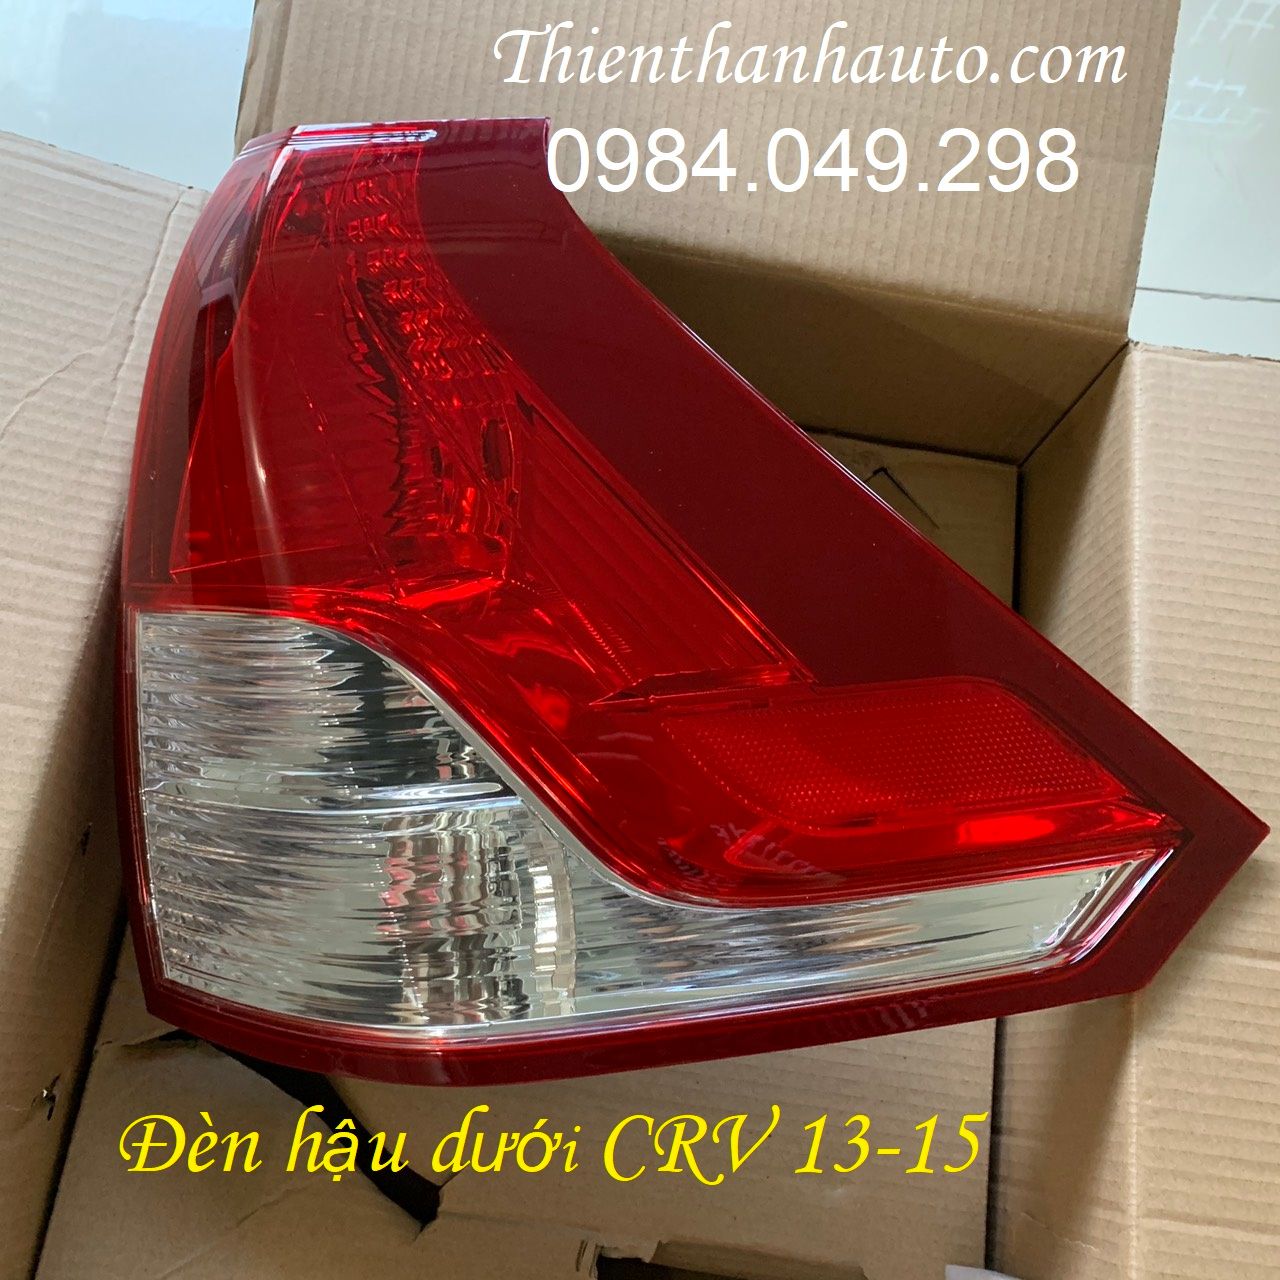 Đèn hậu dưới bên lái Honda CRV 2013-2014-2015 giá tốt - Phụ tùng ô tô Thiên Thanh